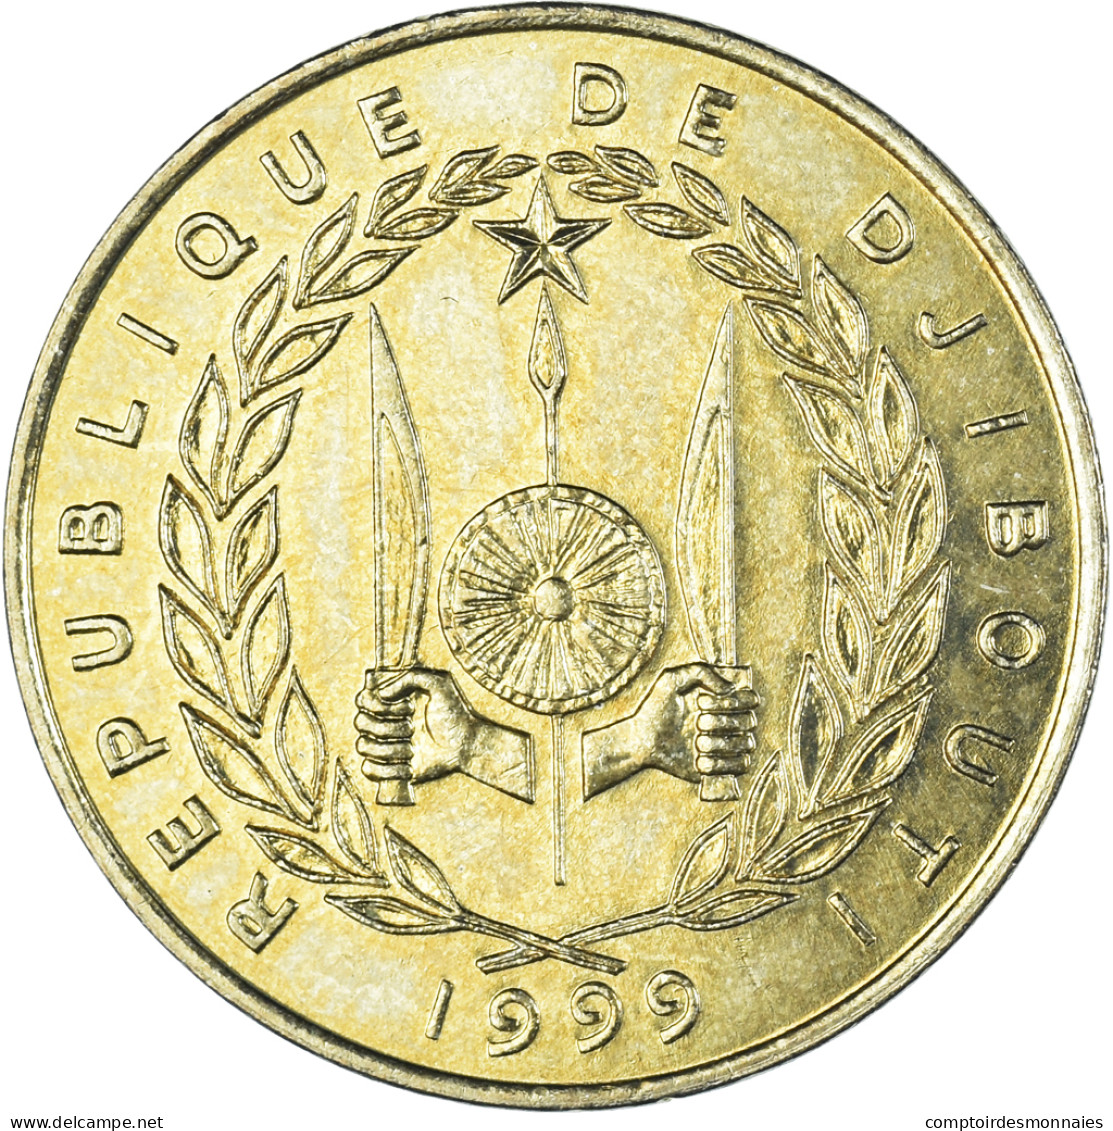 Monnaie, Djibouti, 20 Francs, 1999 - Gibuti